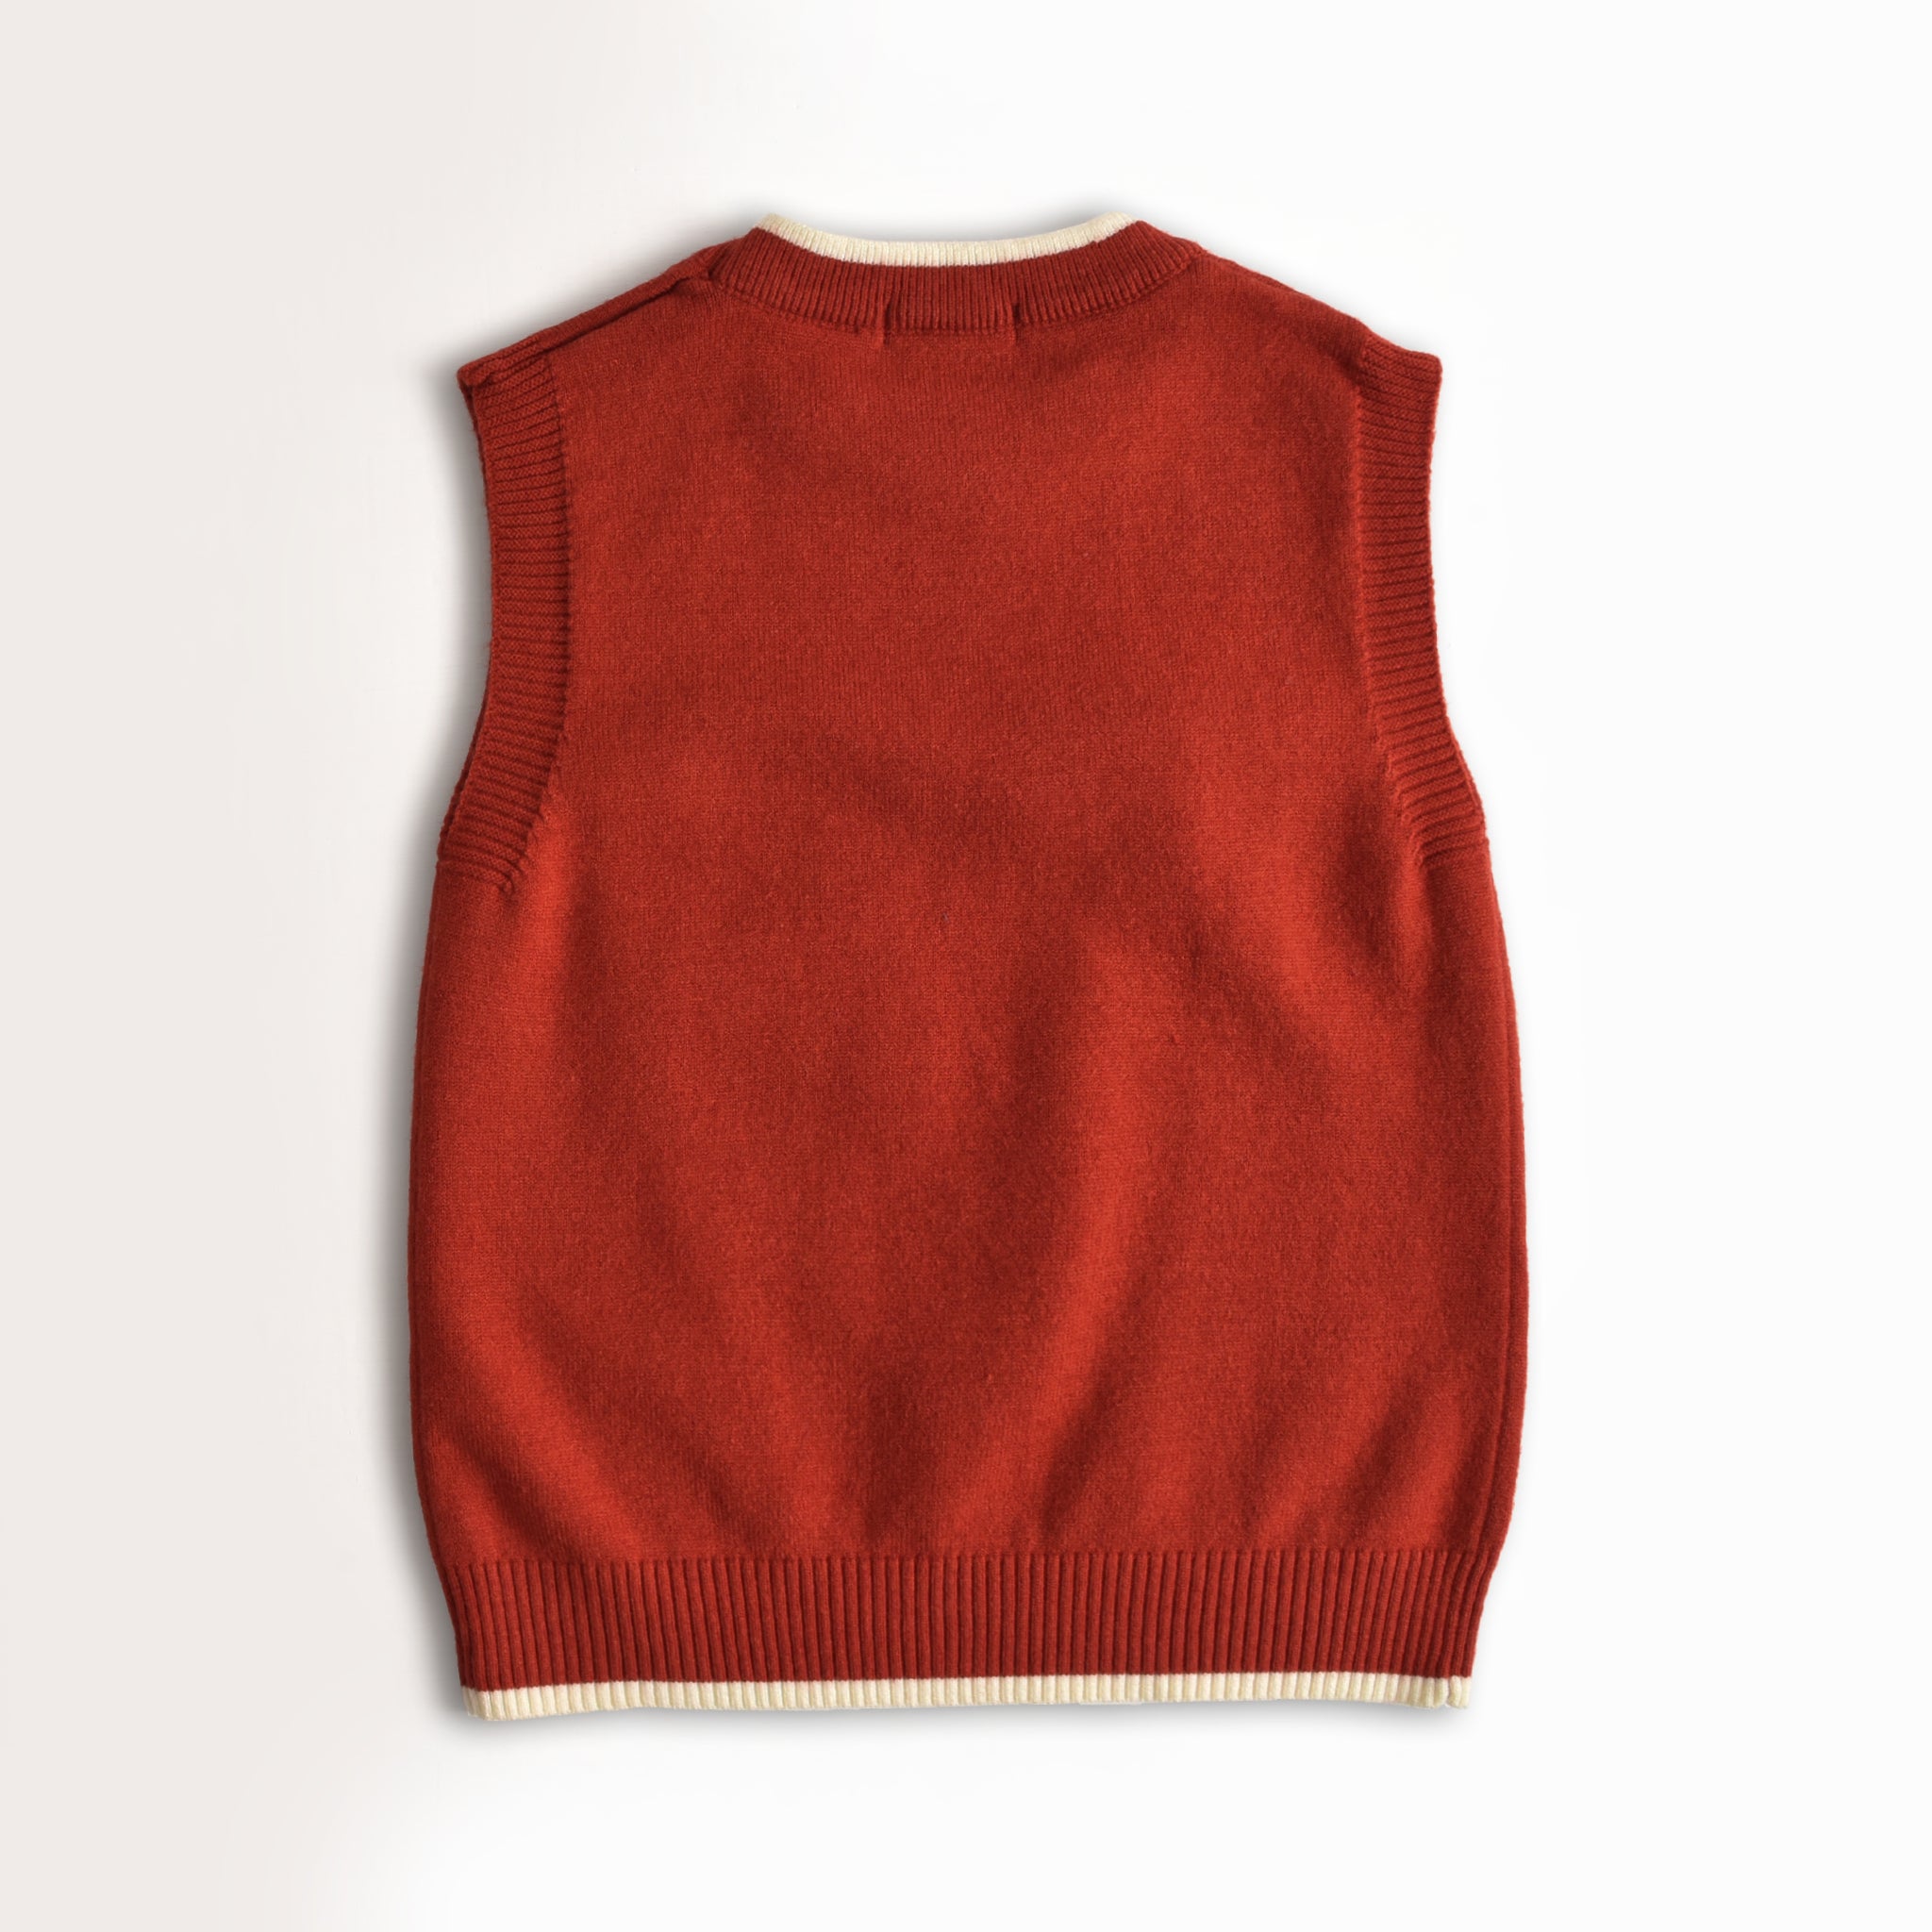 Rose Sleevesless Sweater